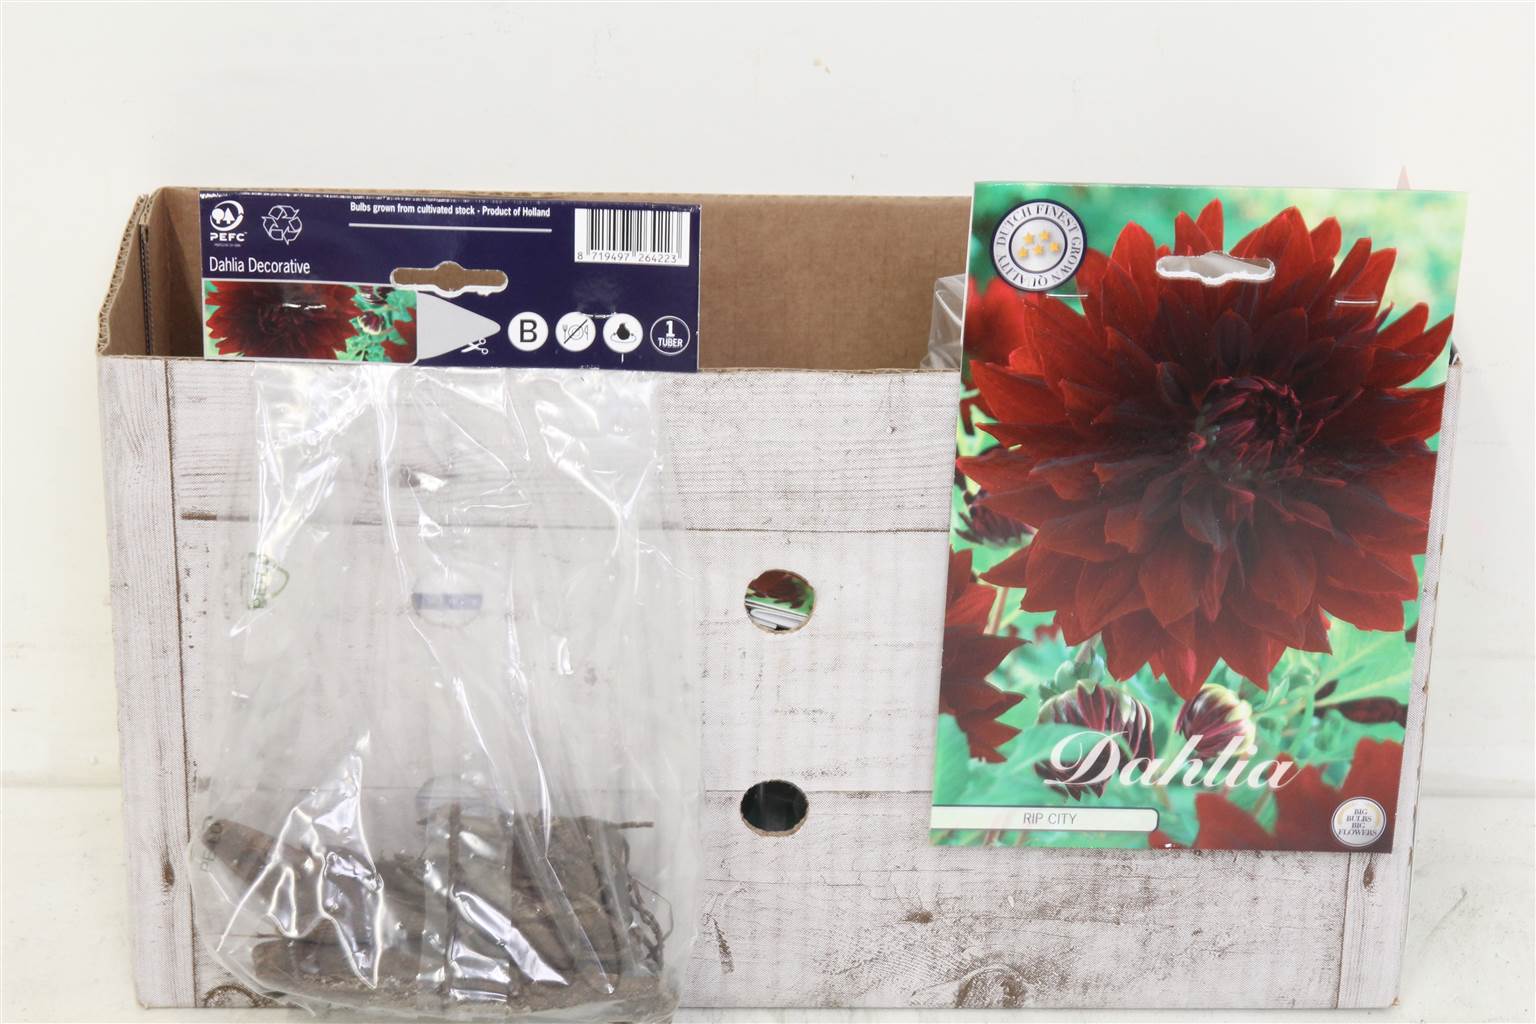 Цветочная луковица Георгин Деко Рип Сити X1 ( Flower bulb Dahlia Deco Rip City X1 ) H 20 см